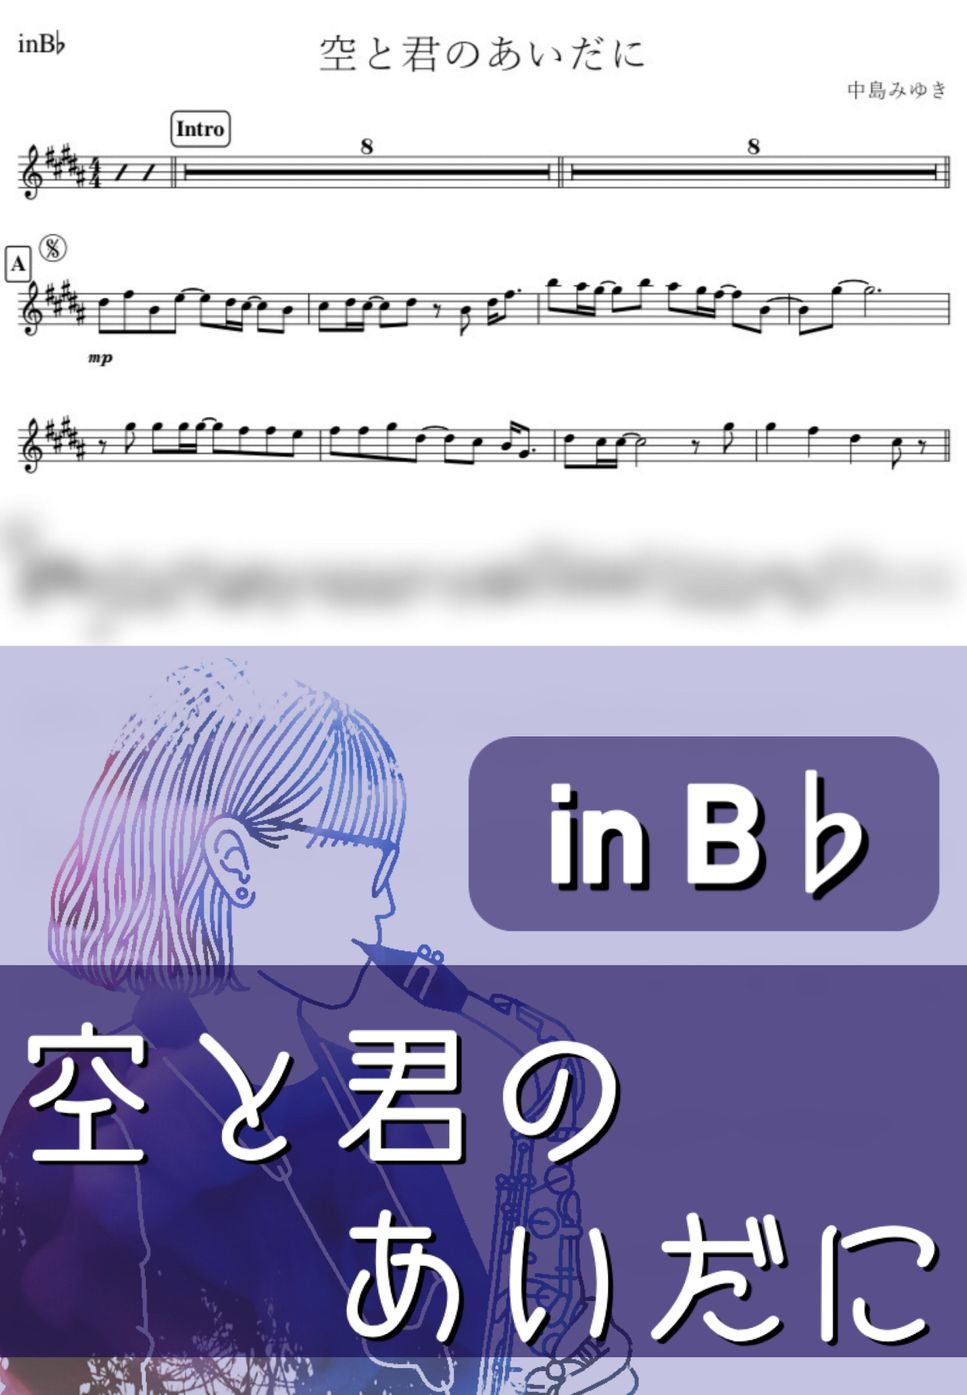 中島みゆき - 空と君のあいだに (B♭) by kanamusic